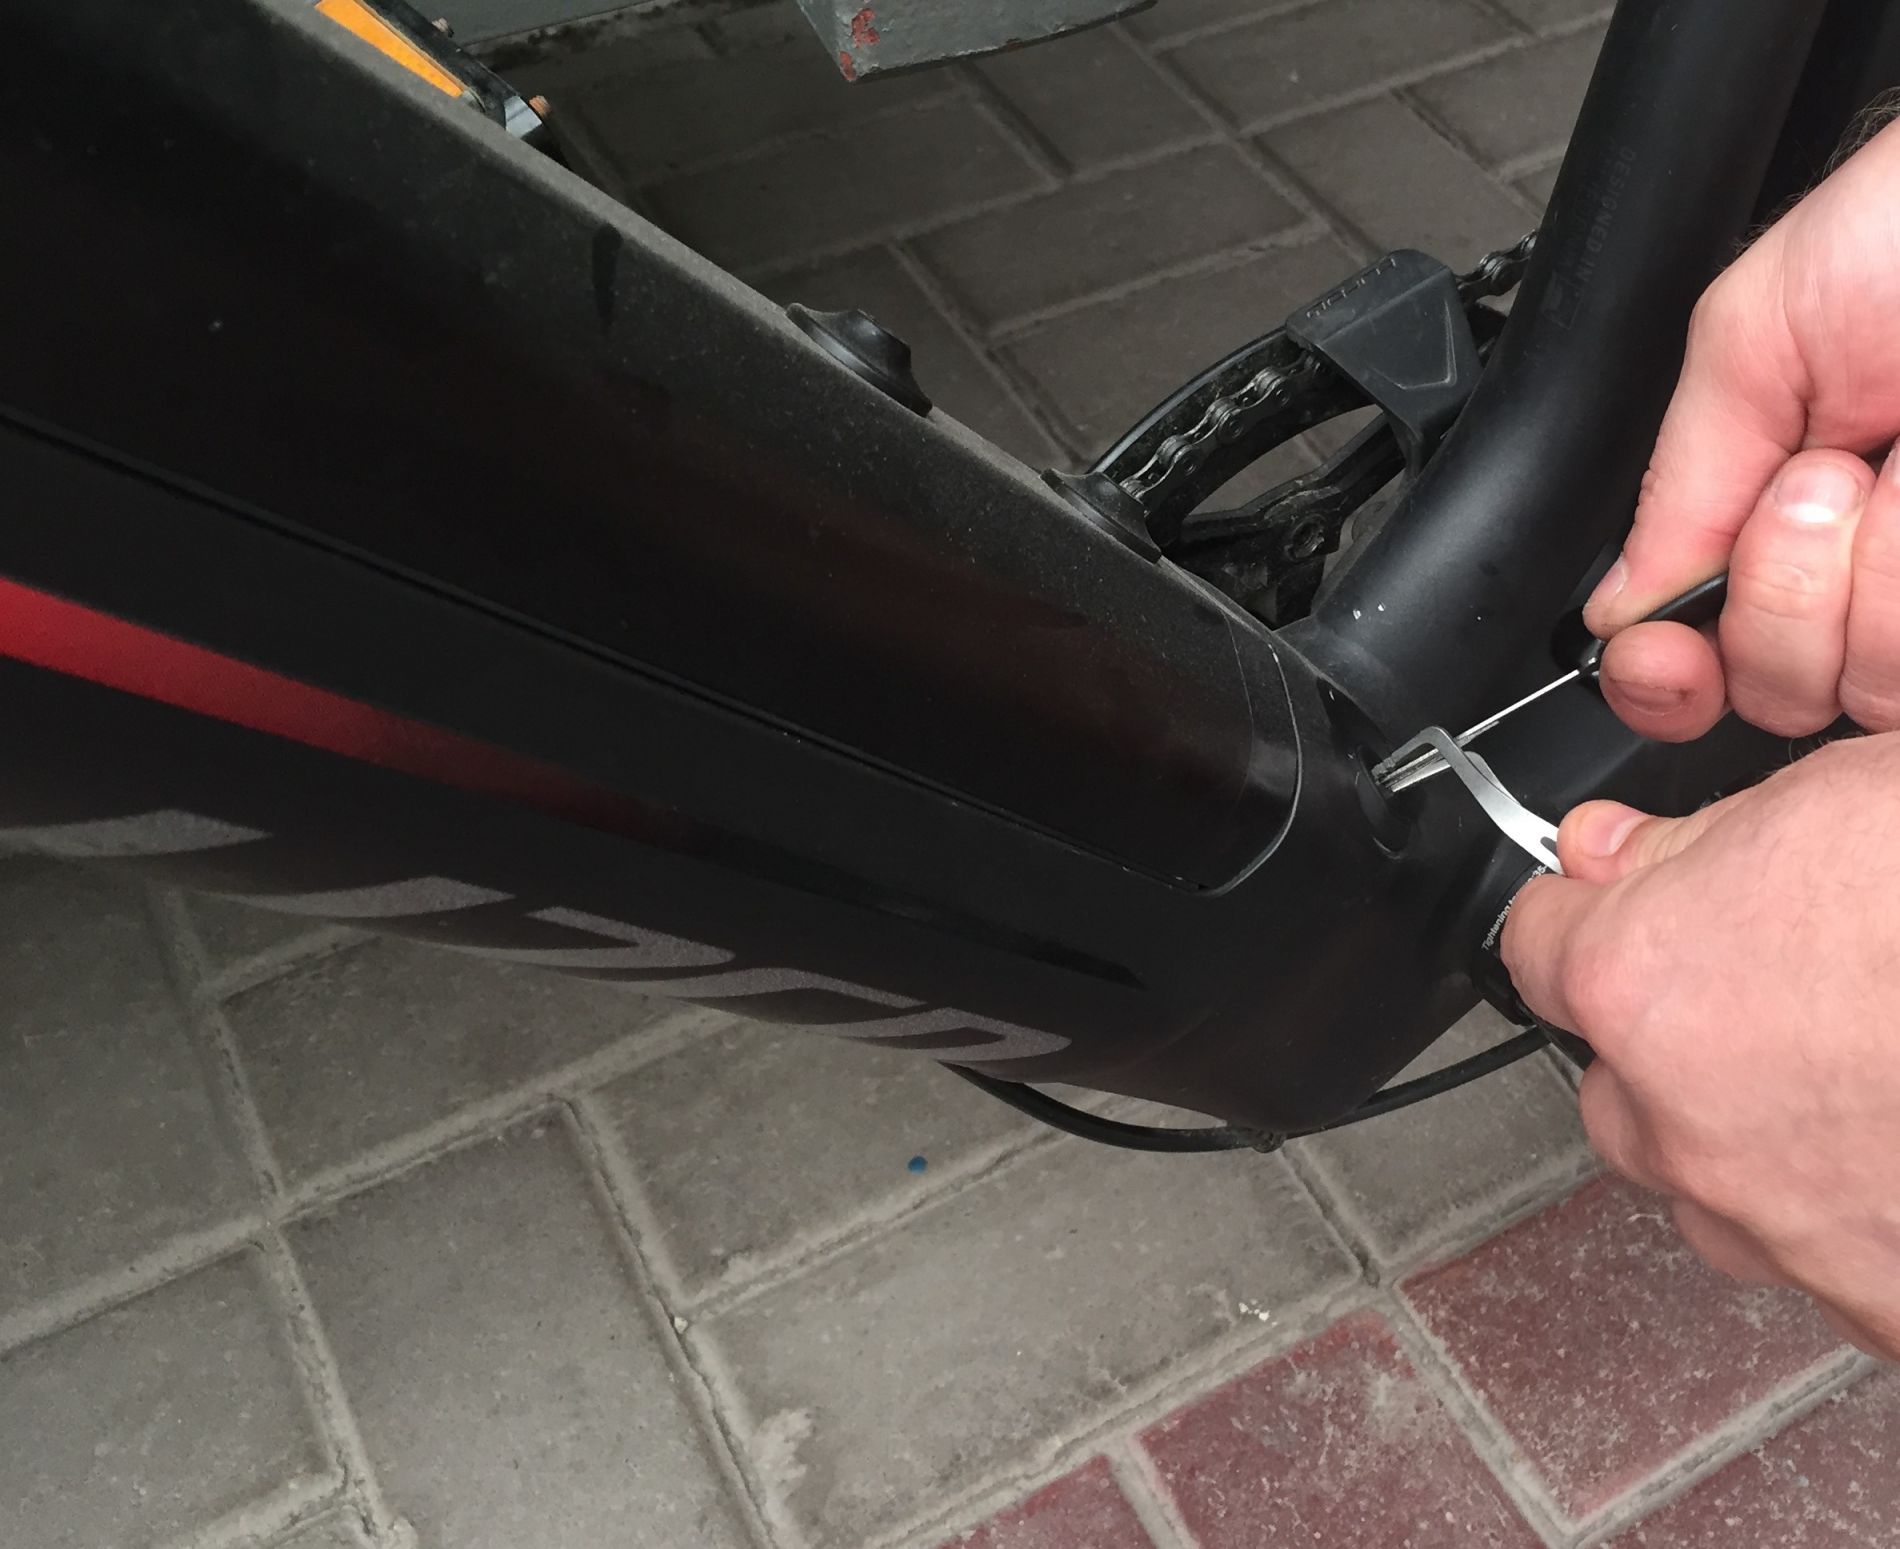 Dorobienie kluczy do elektrycznego roweru firmy Specialized